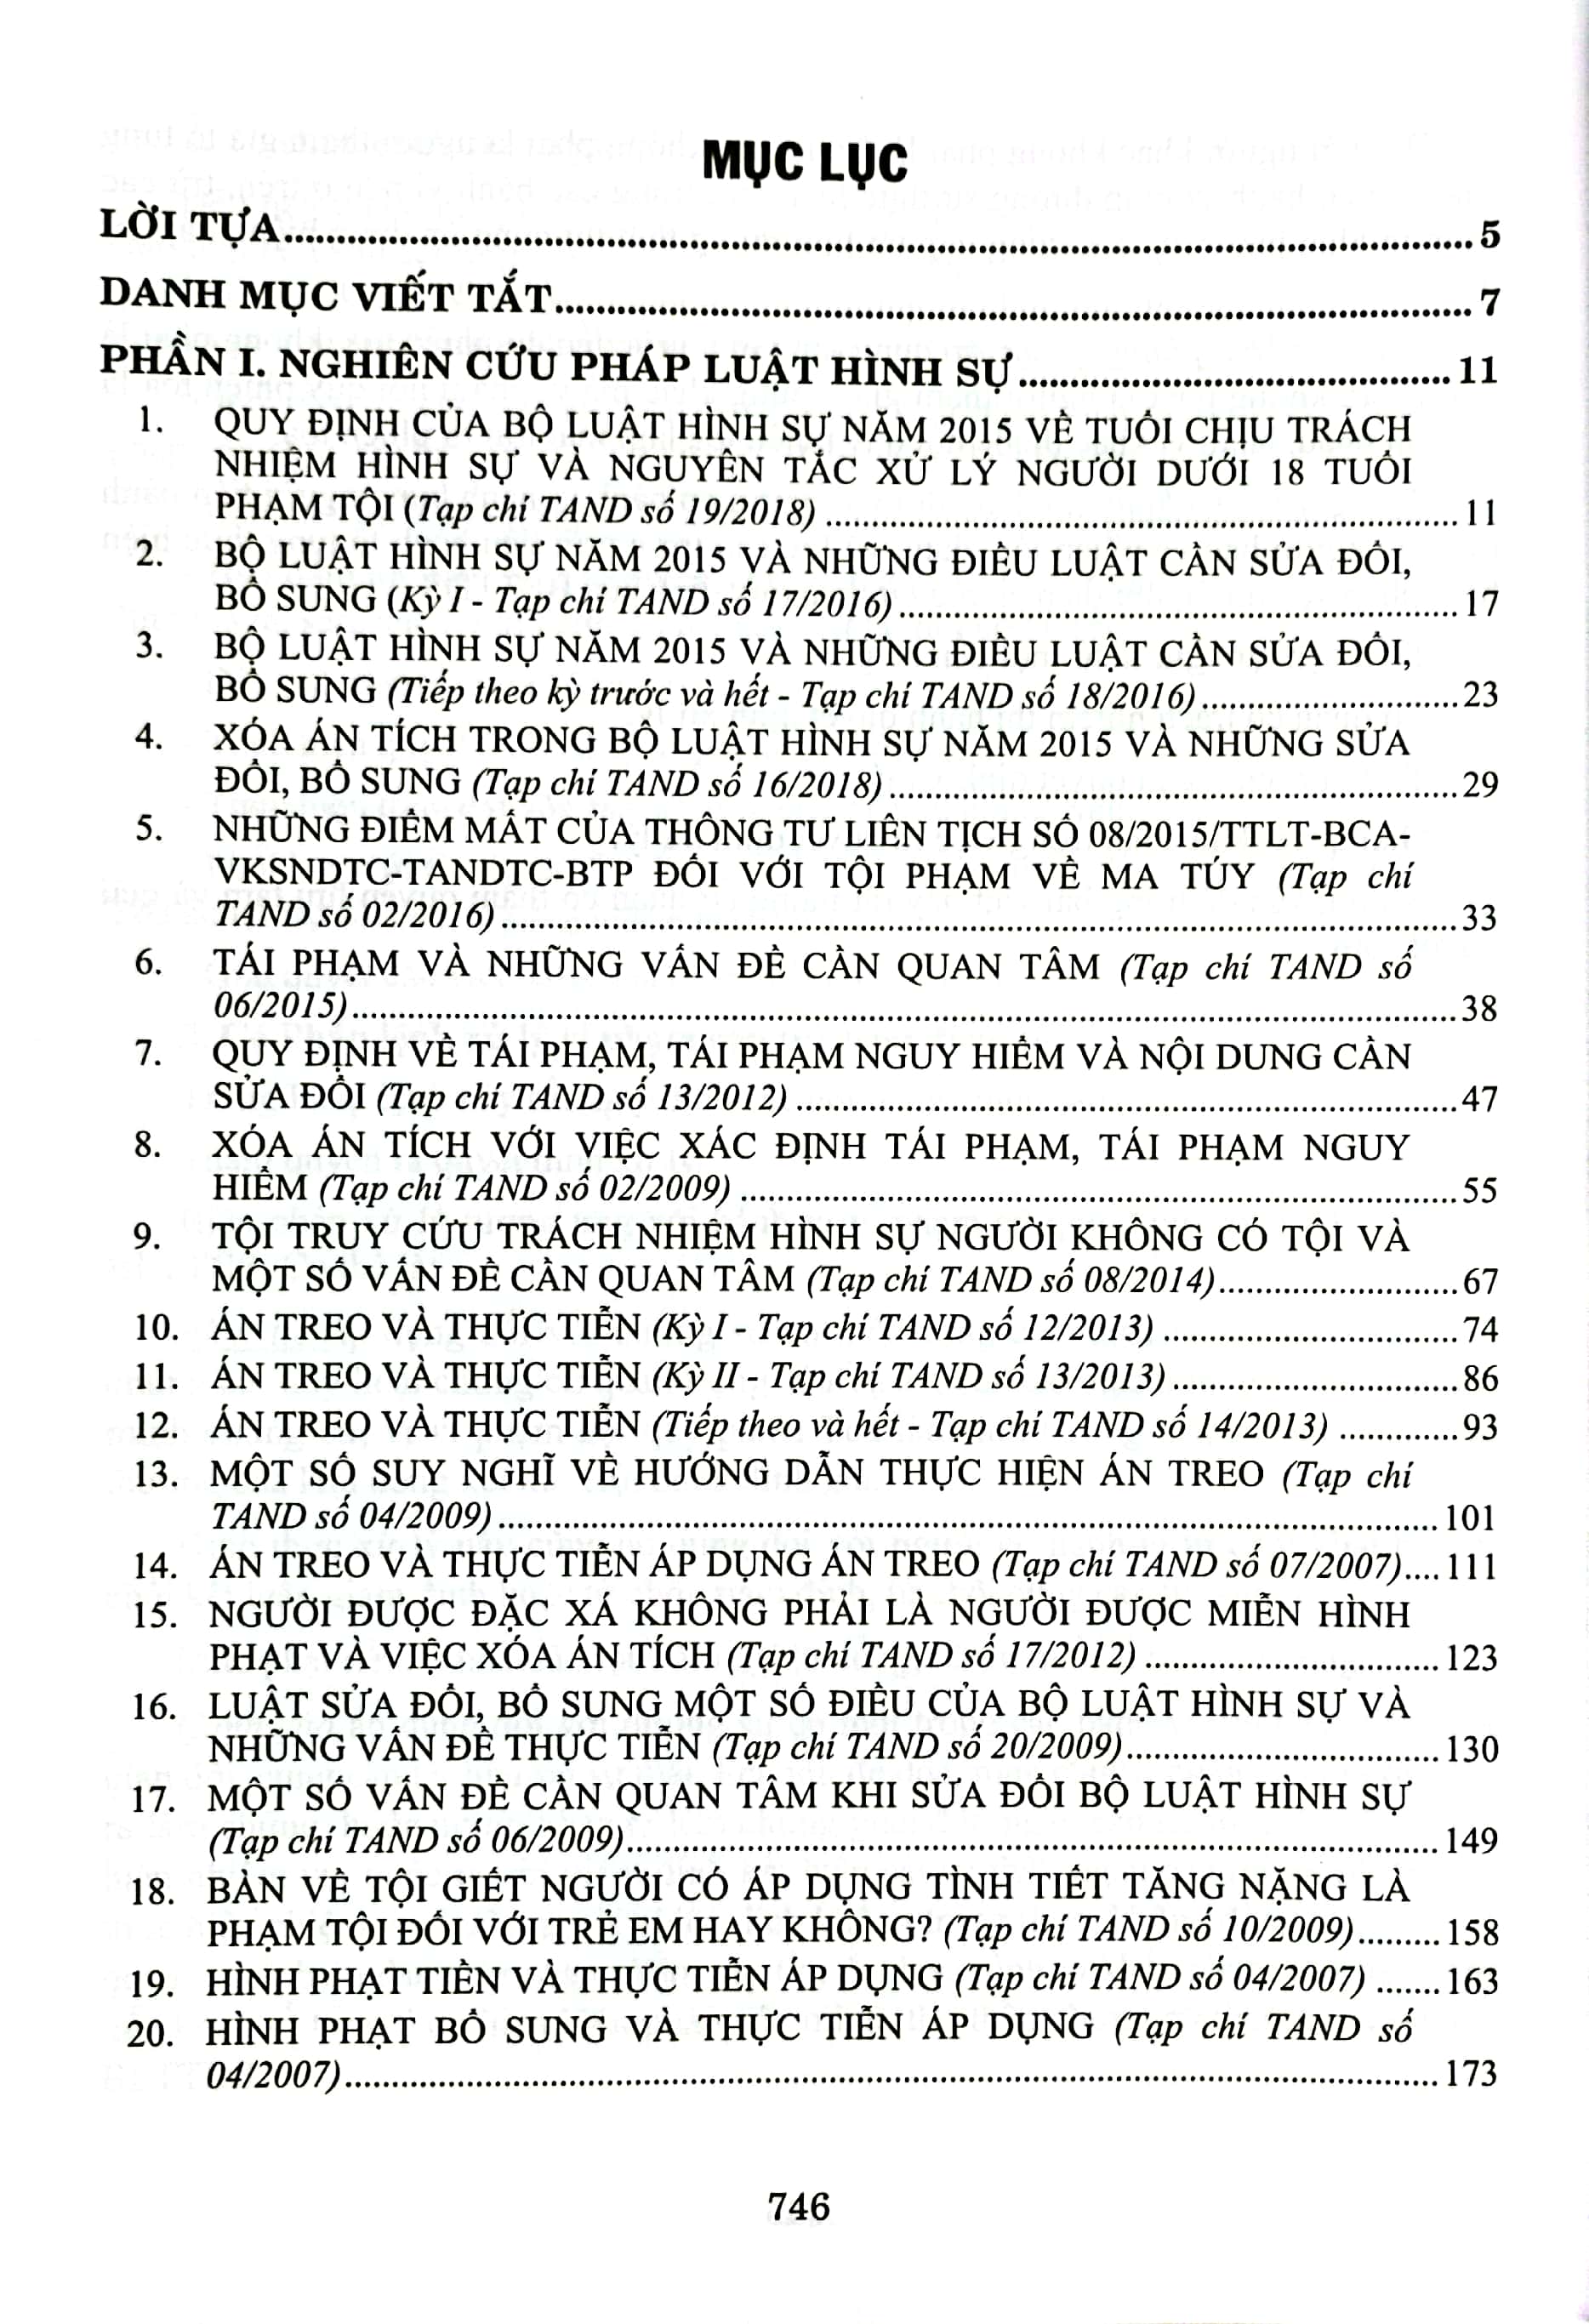 Tuyển Tập 100 Bài Viết Đăng Trên Tạp Chí Chuyên Ngành Luật Của Tác Giả Đỗ Văn Chỉnh PDF